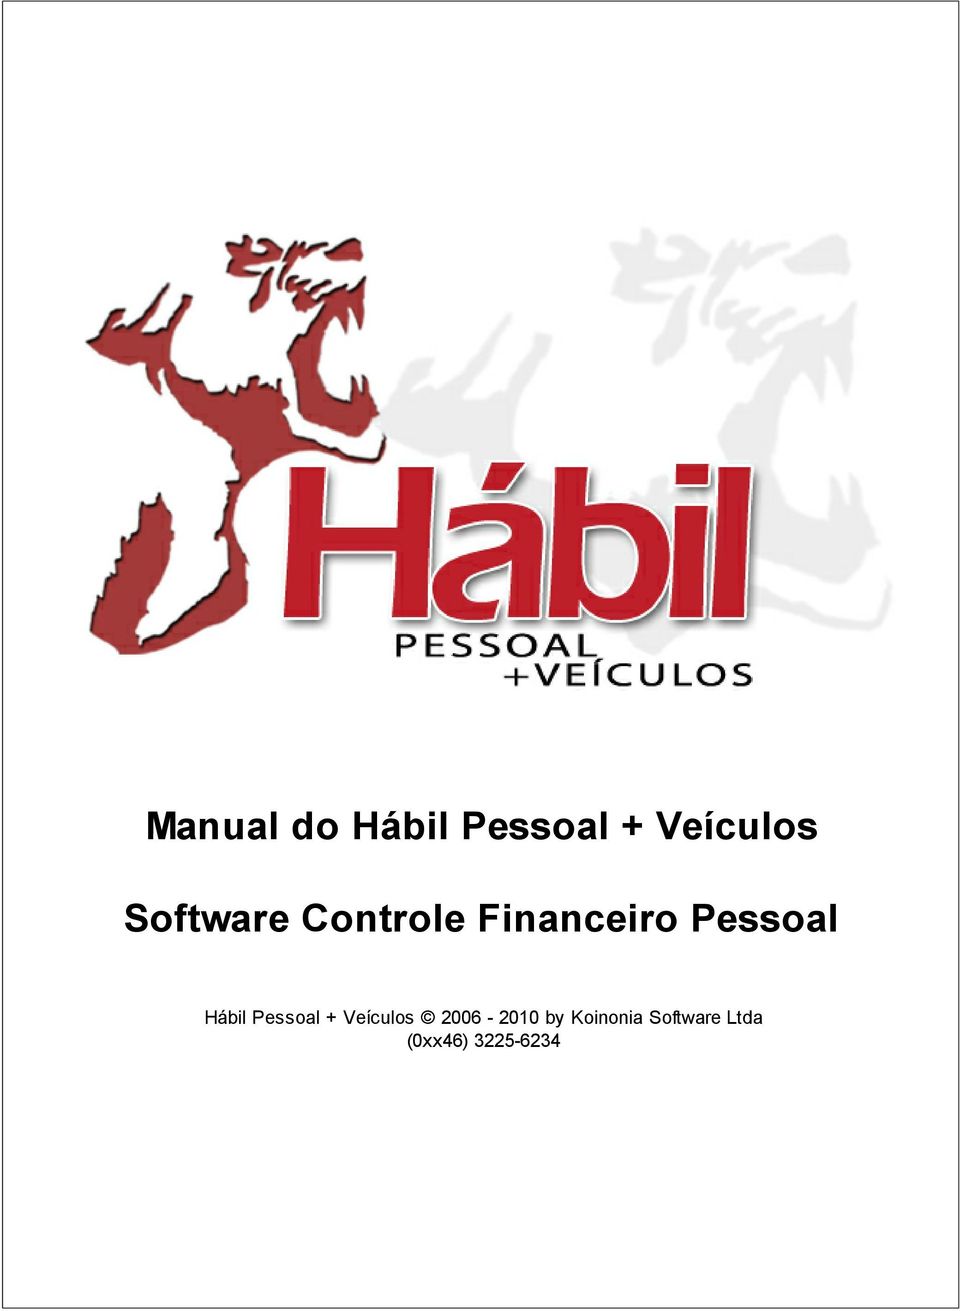 Hábil Pessoal + Veículos 2006-2010 by